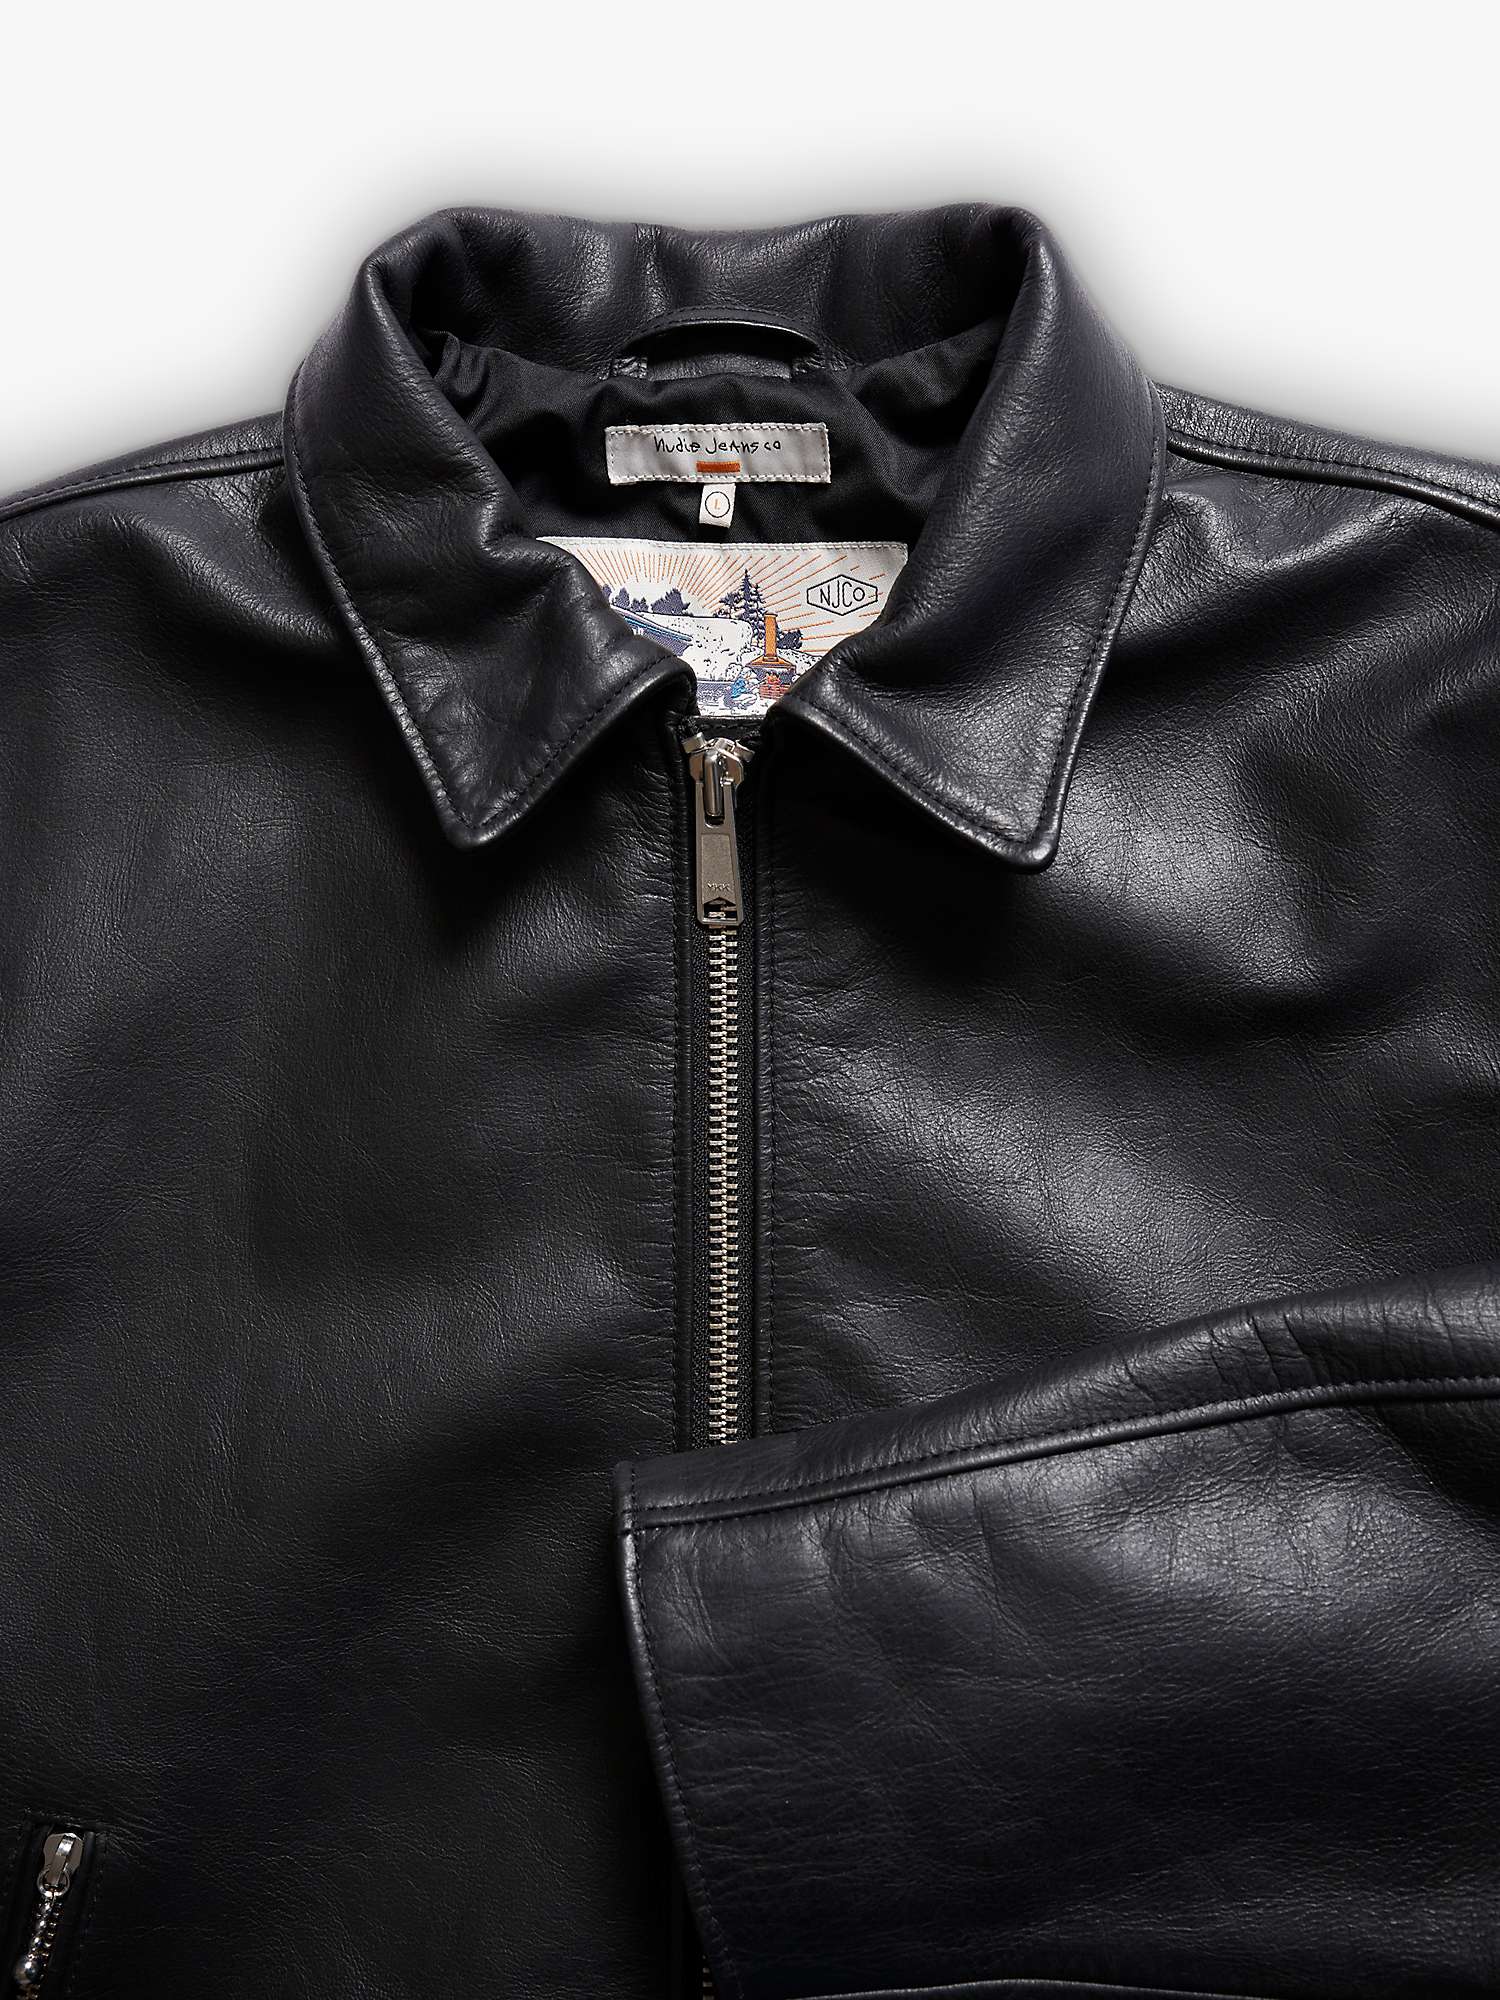 Buy Nudie Jeans Eddy Rider Leather Jacket, Black Online at johnlewis.com